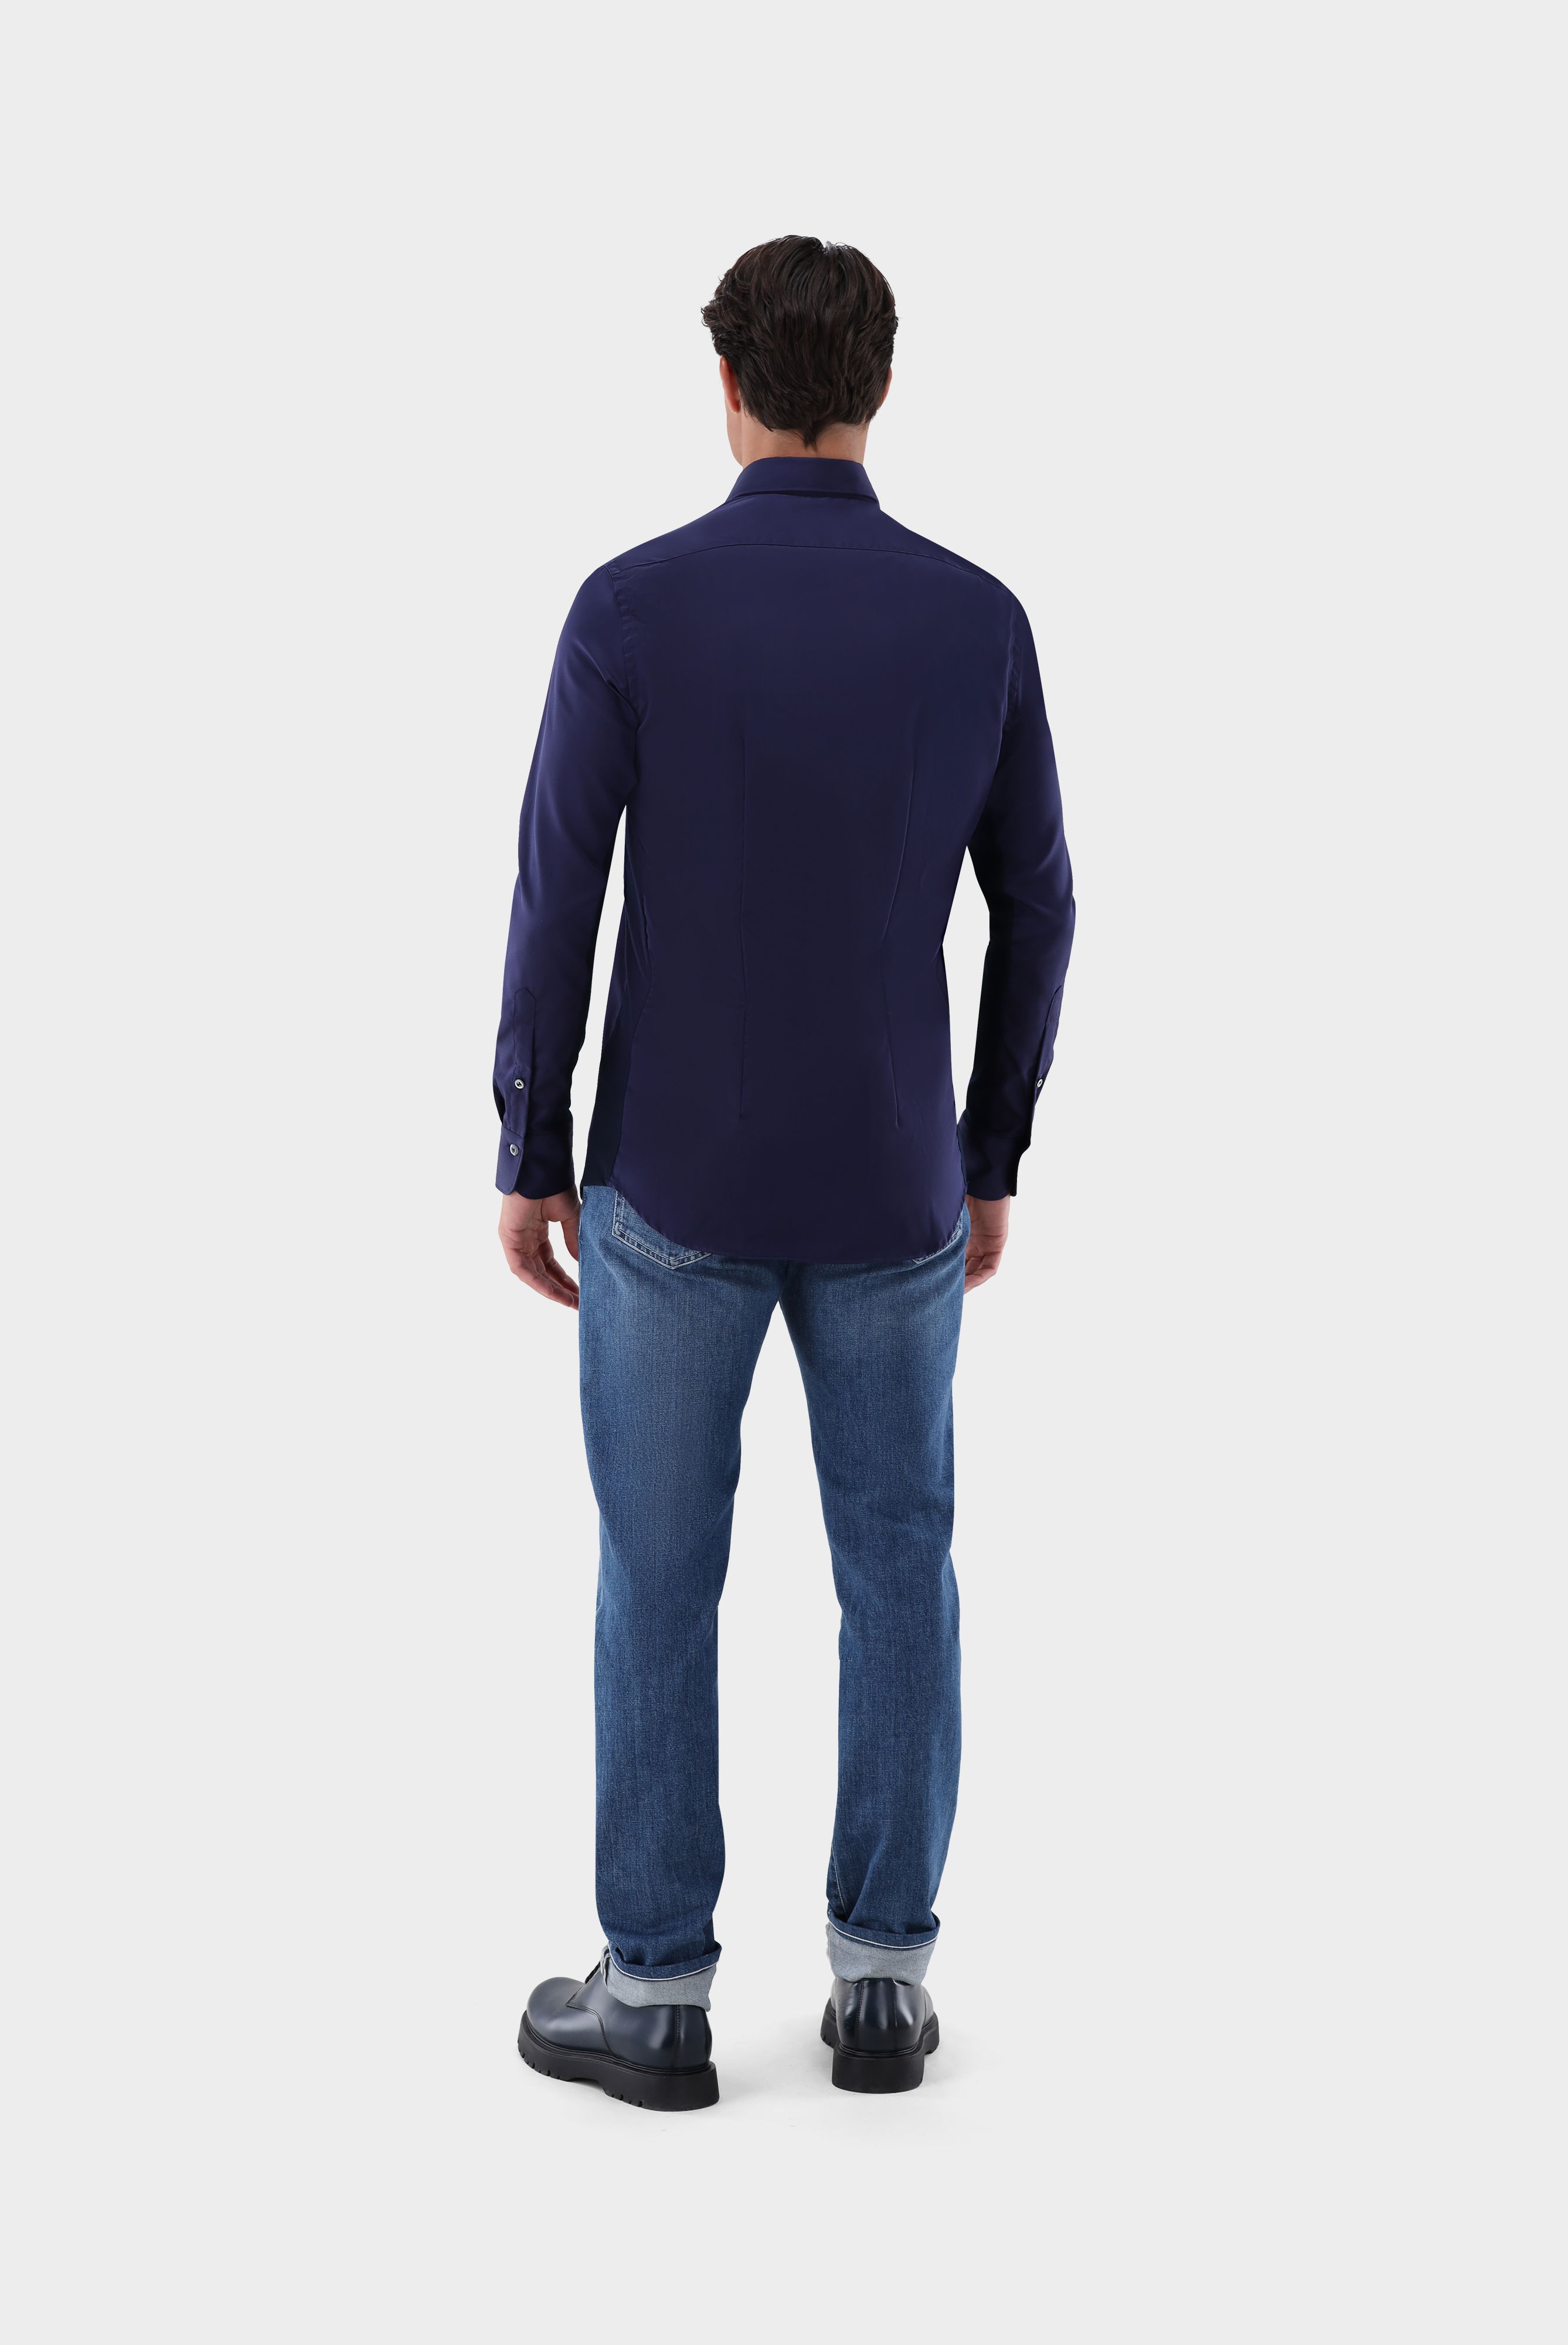 Bügelleichte Hemden+Bügelfreies Hybridshirt mit Jerseyeinsatz Slim Fit+20.2553.0F.132241.790.44